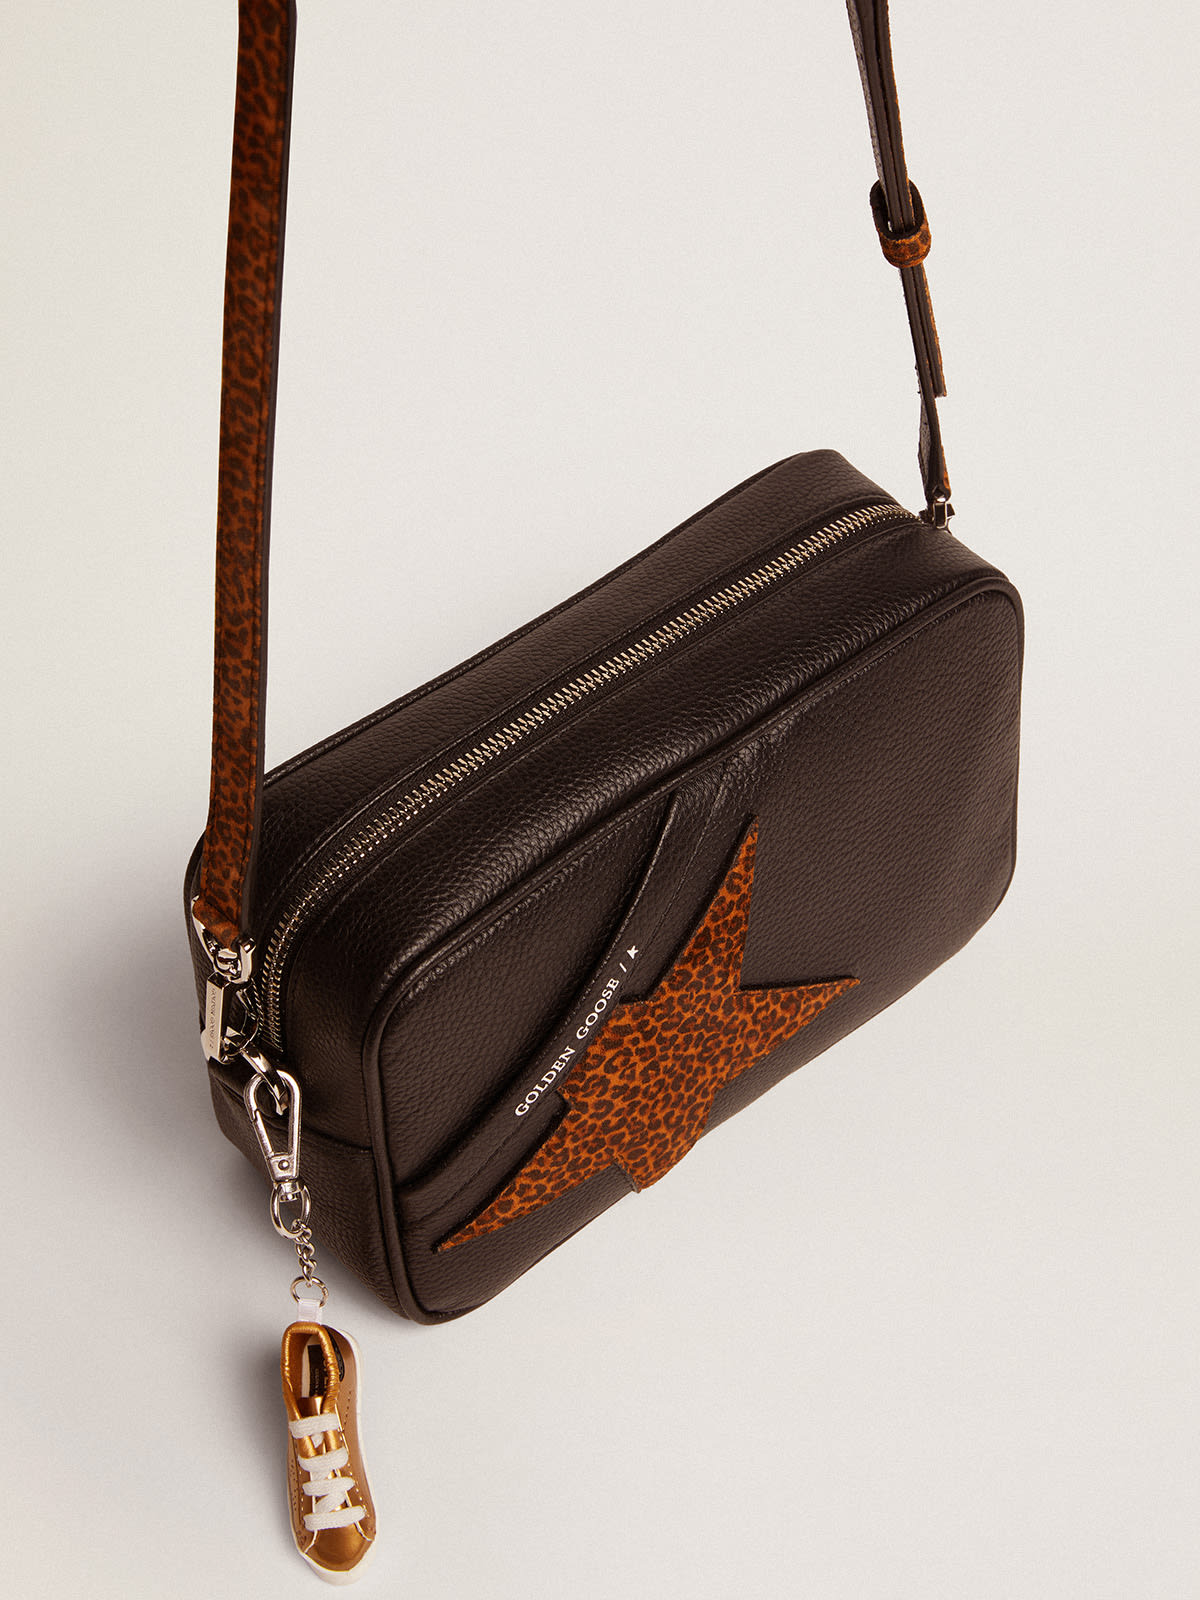 Golden Goose - Star Bag de piel marrón oscuro y estrella con estampado de leopardo in 